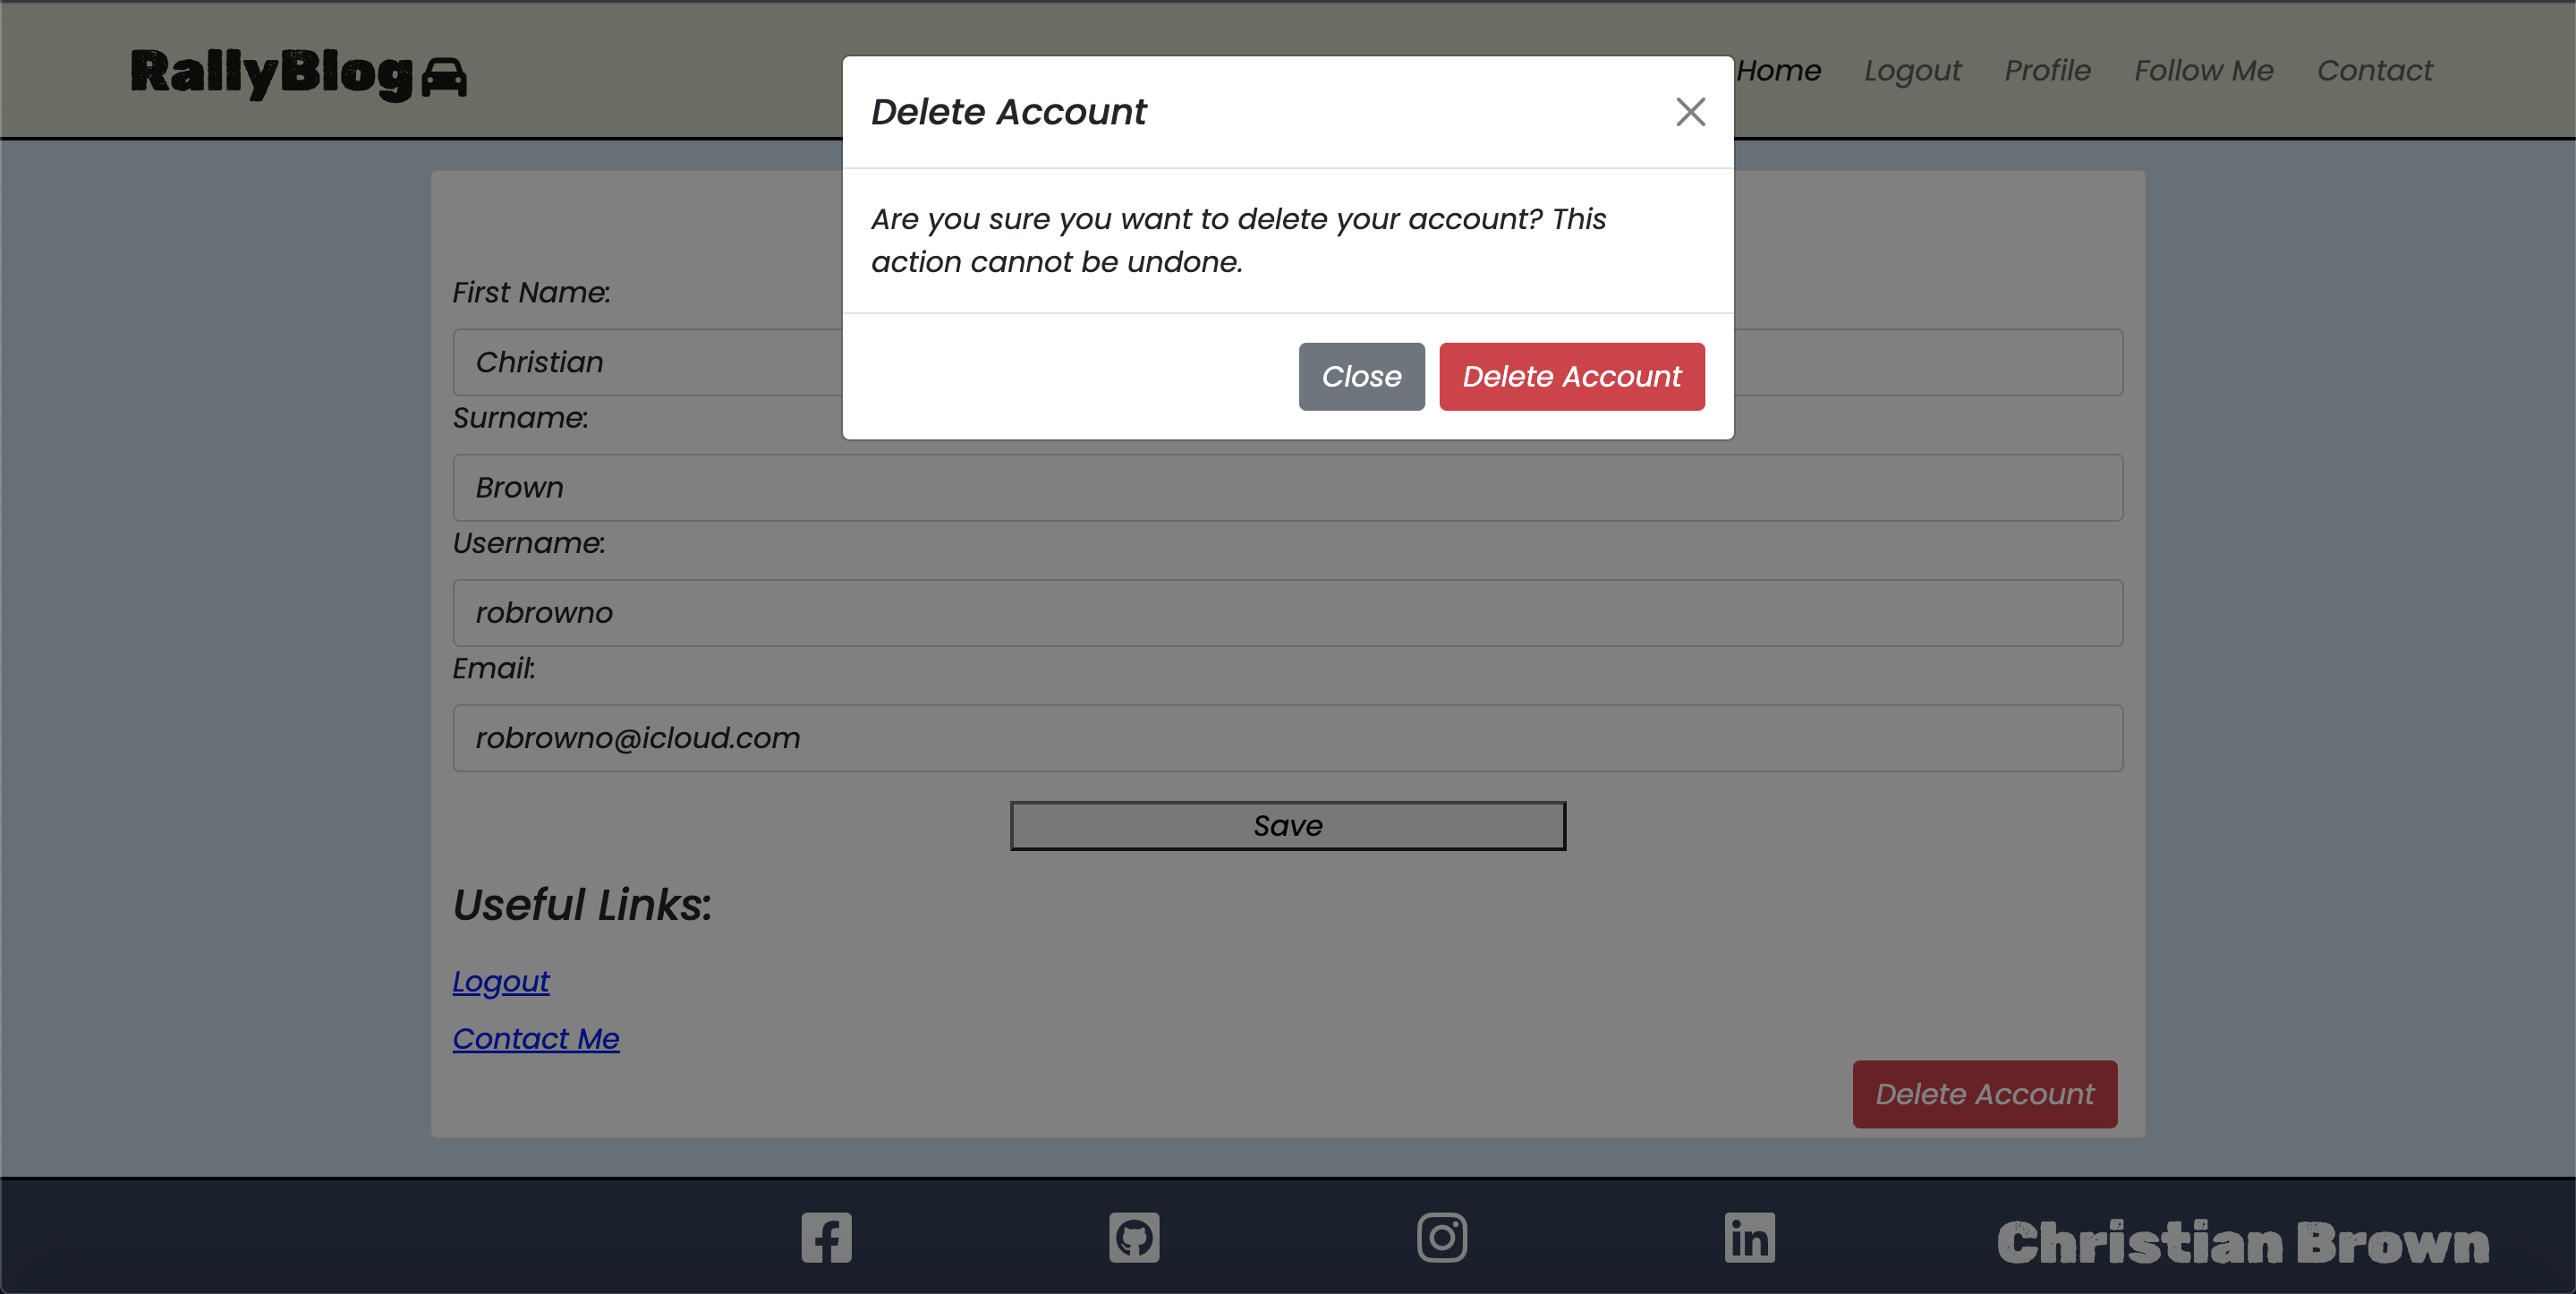 Delete Account Modal